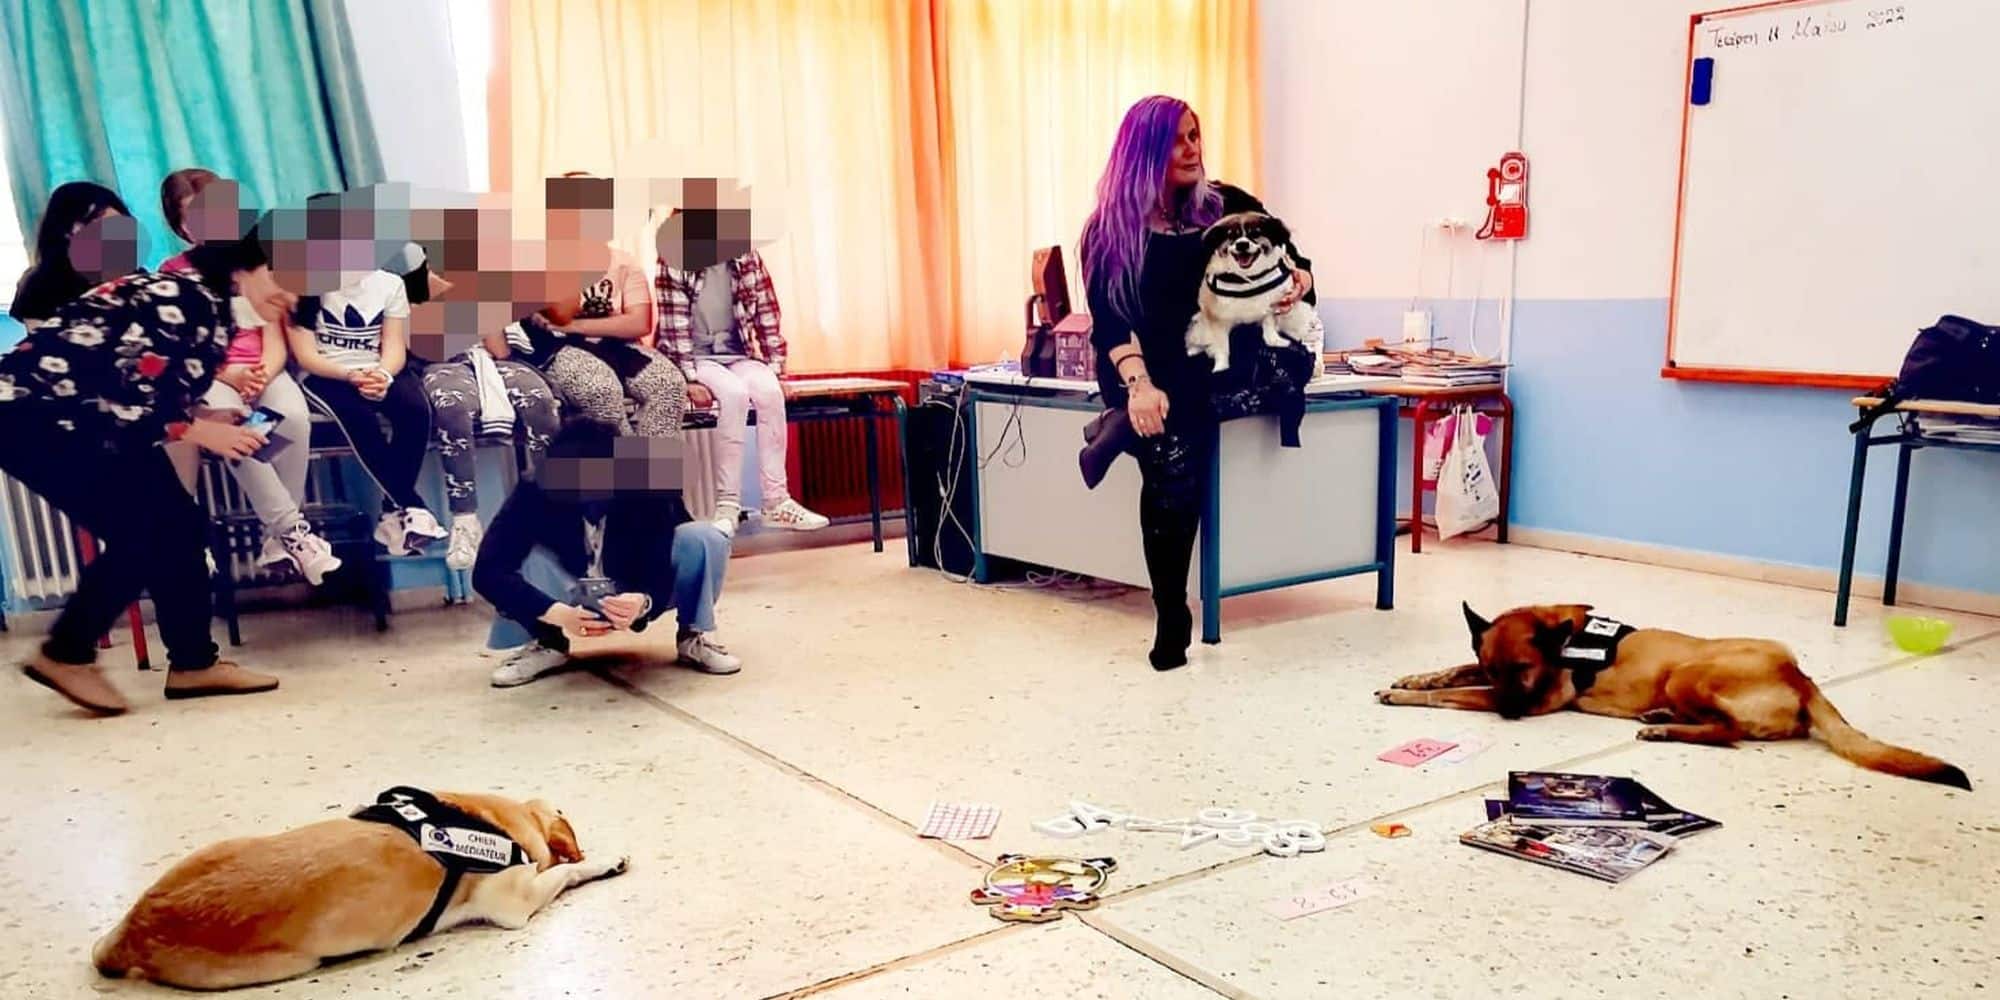 Θεσσαλονίκη: Σκύλοι που μαχαιρώθηκαν και πυροβολήθηκαν μπαίνουν στα σχολεία και μαθαίνουν στα παιδιά την αγάπη (εικόνες)